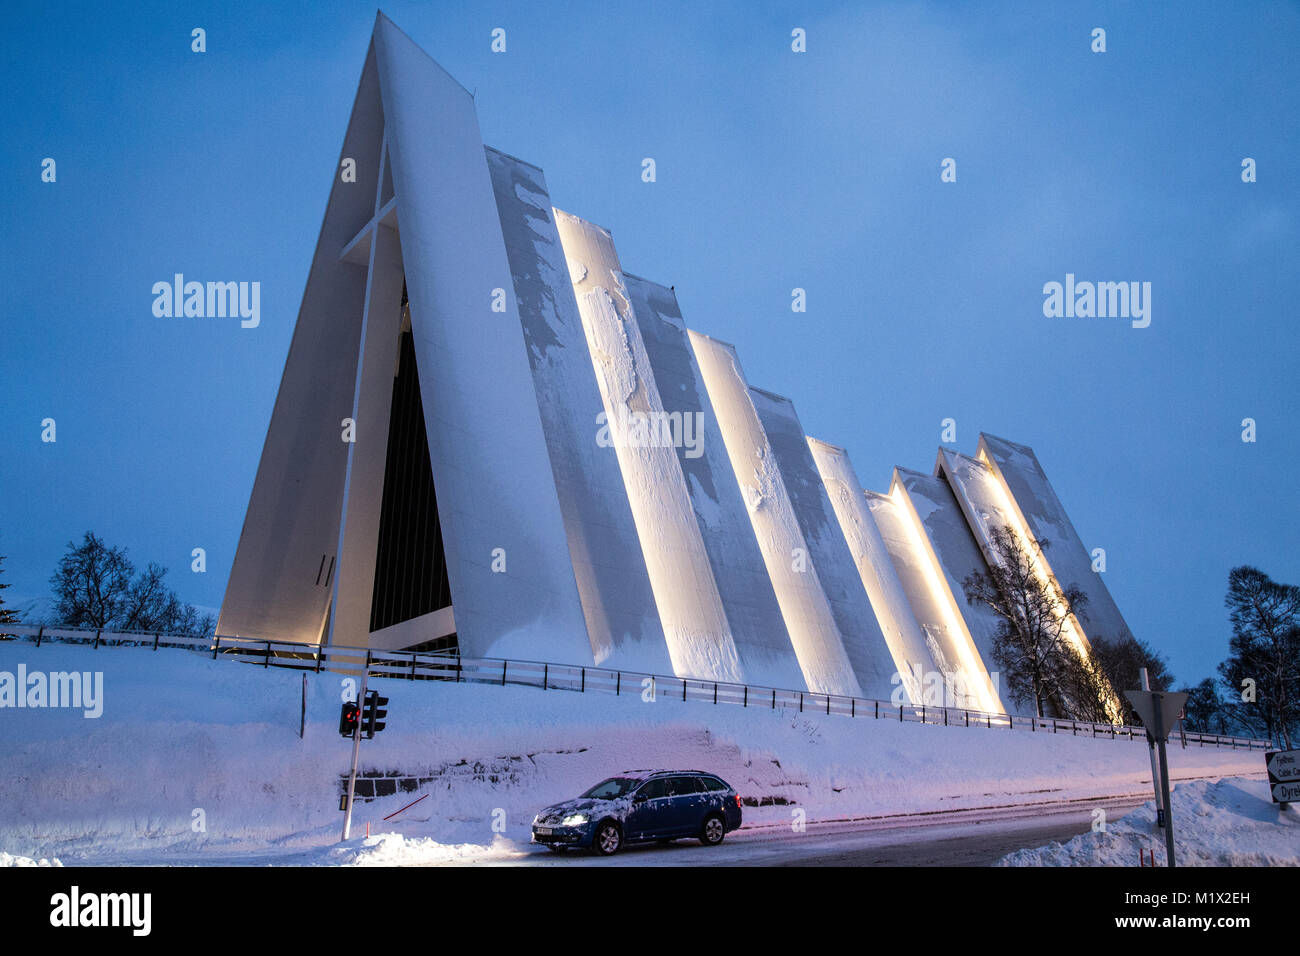 Eine Seitenansicht der Eismeerkathedrale (Ishavskatedralen) in Tromsø, Norwegen. Das kühle, moderne Kirche ist ein Beispiel der Arktischen Architektur. Stockfoto